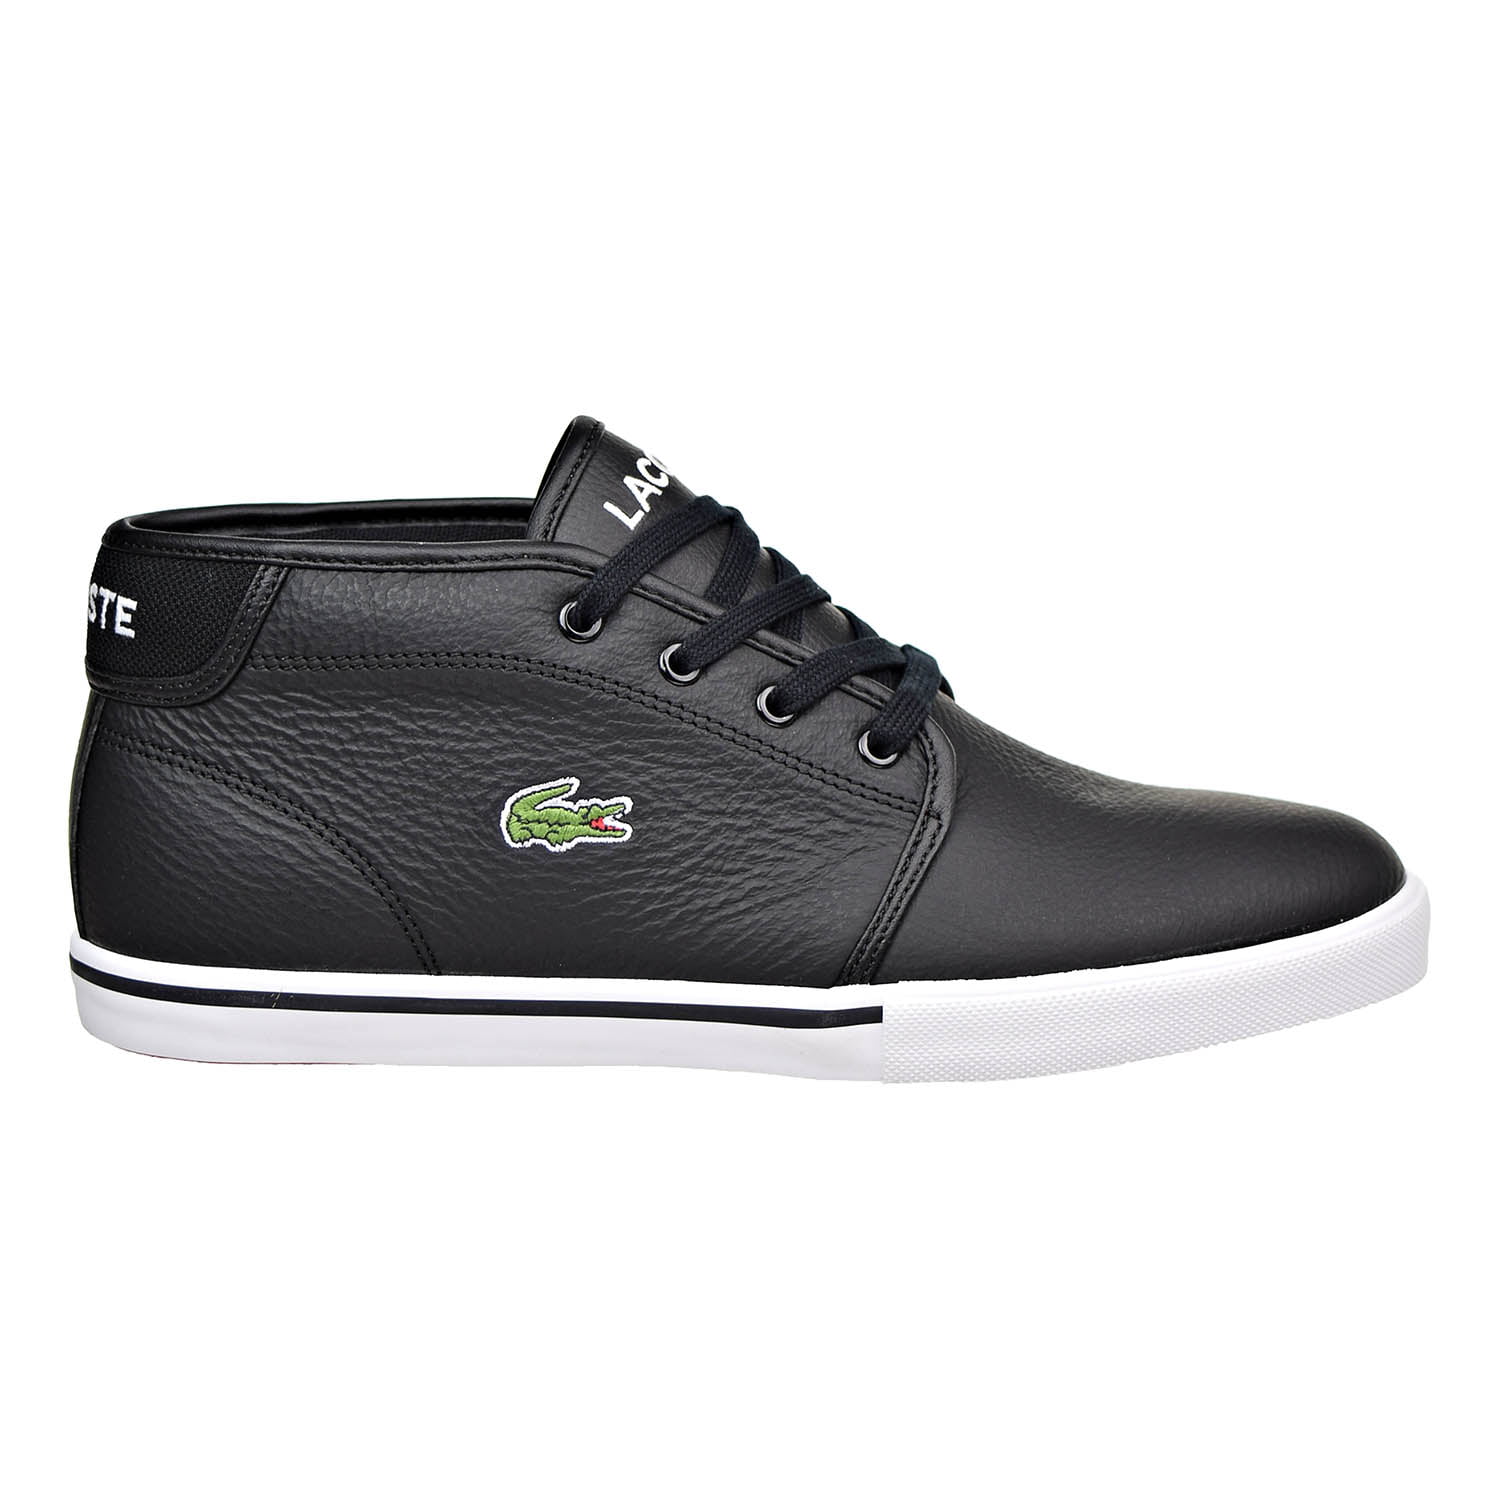 Lacoste Ampthill LCR3 SPM Leather Mens Shoes Black 7-31spm0098-02h Walmart.com